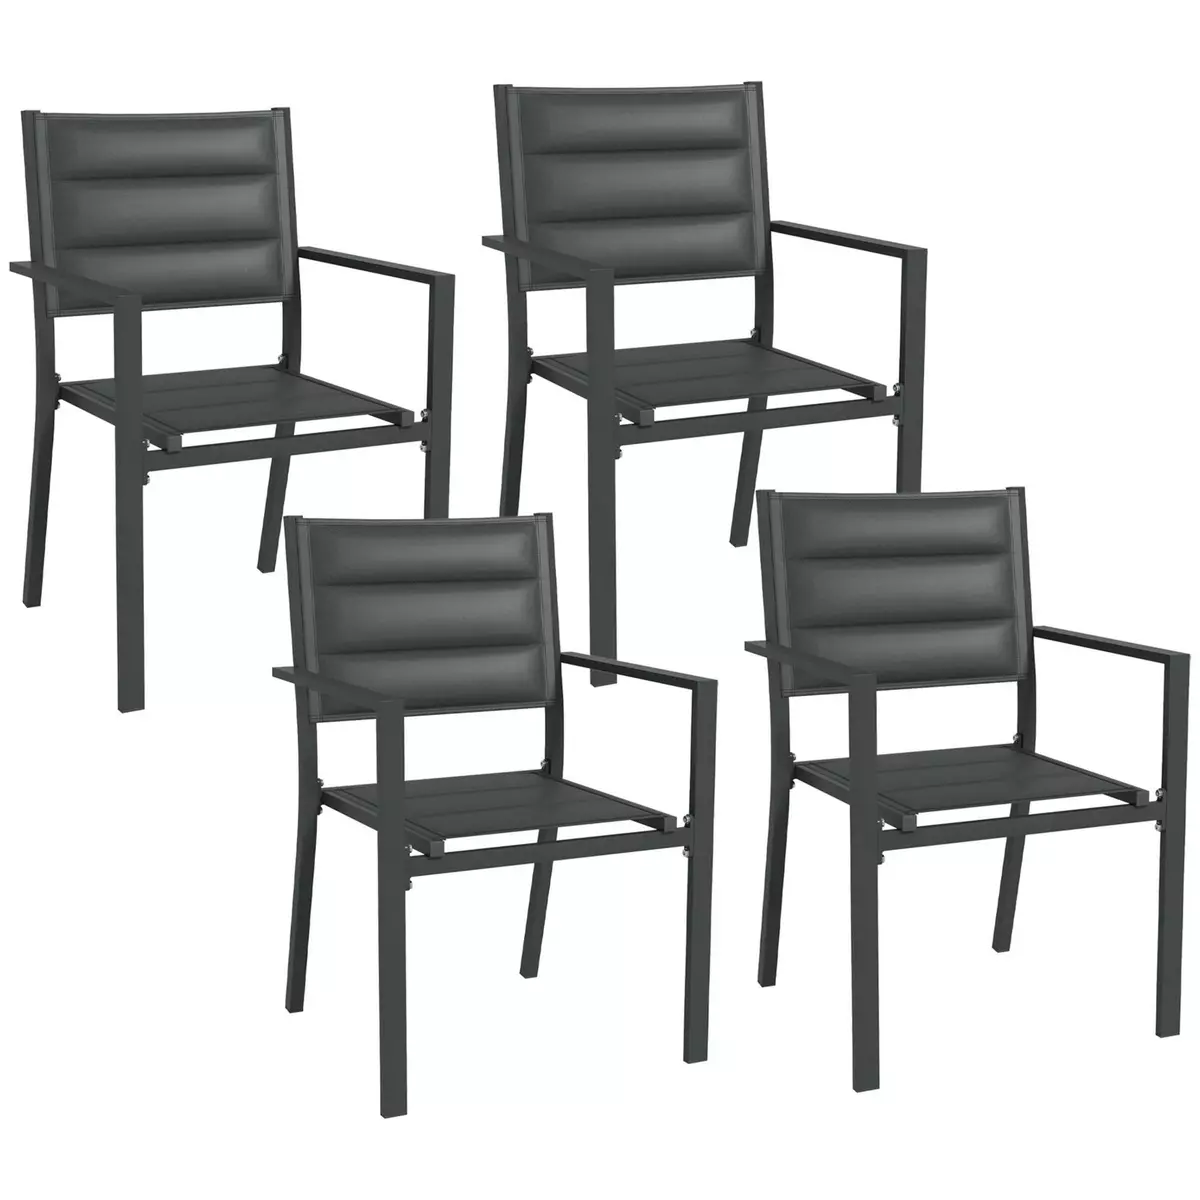 OUTSUNNY Lot de 4 chaises de jardin empilables avec accoudoirs alu textilène gris